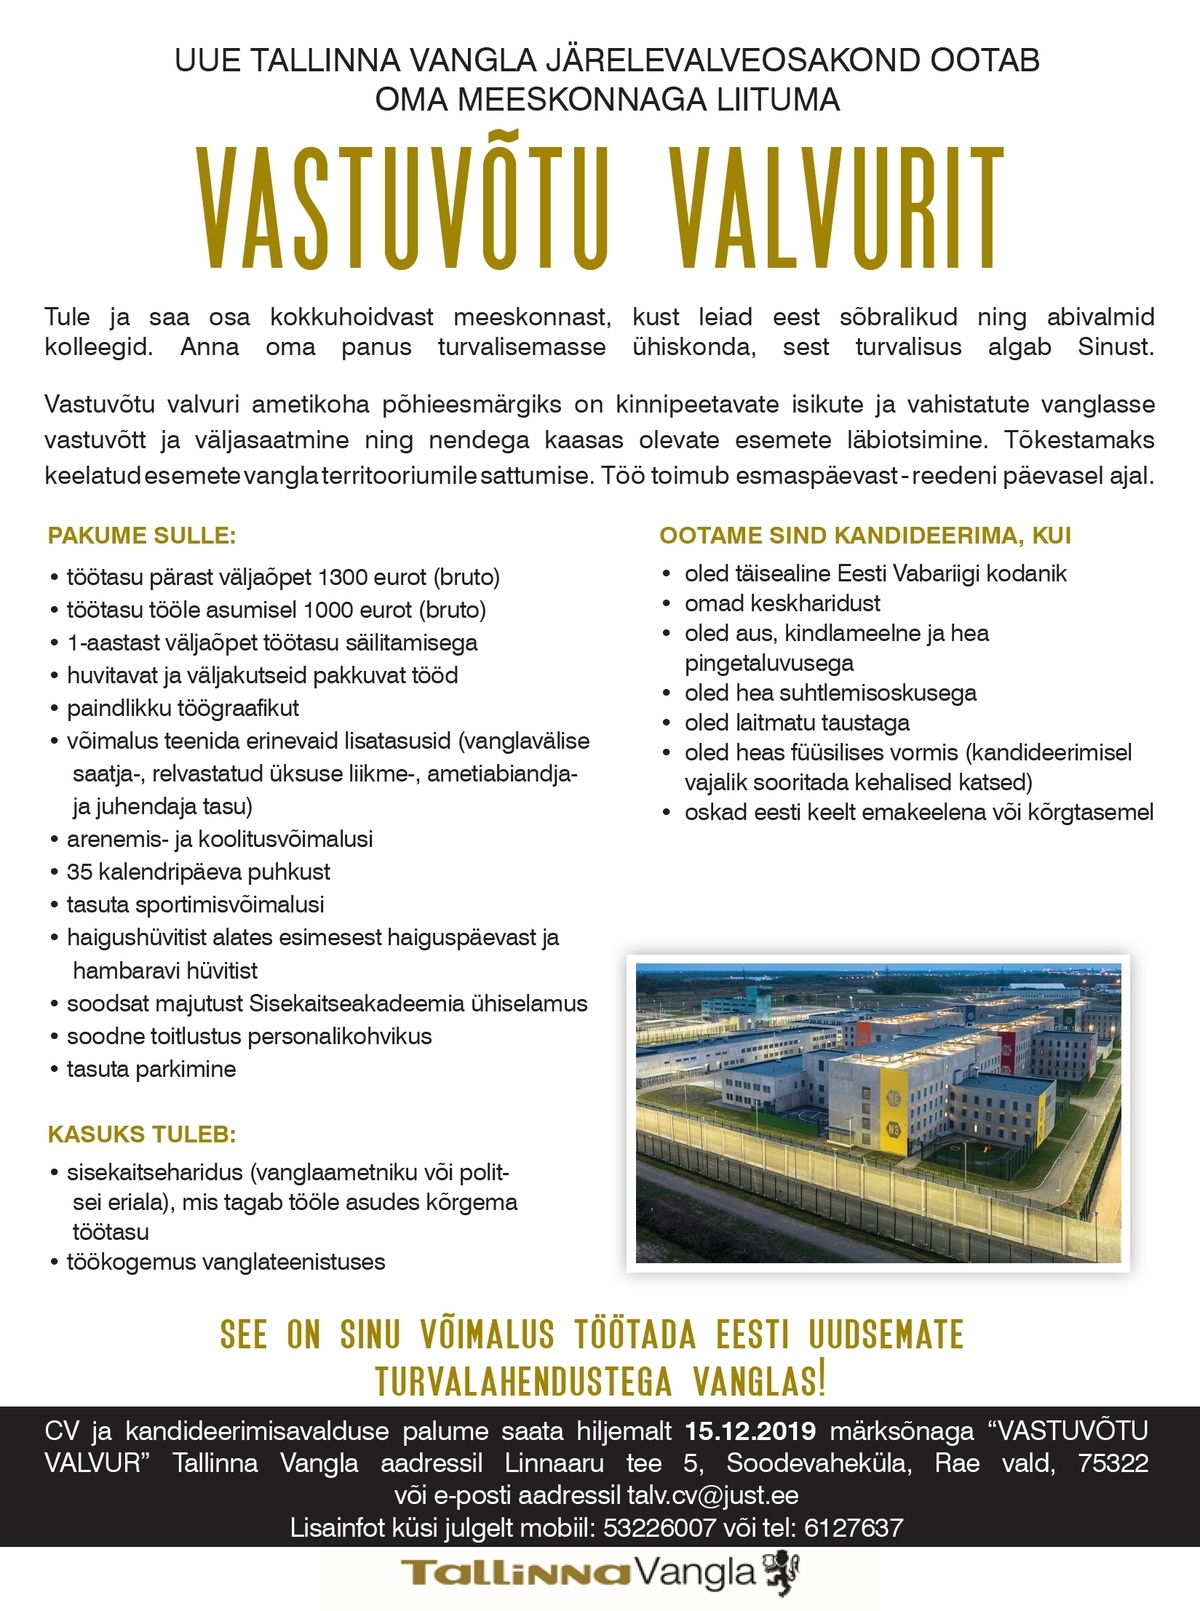 Tallinna Vangla VASTUVÕTU VALVUR 